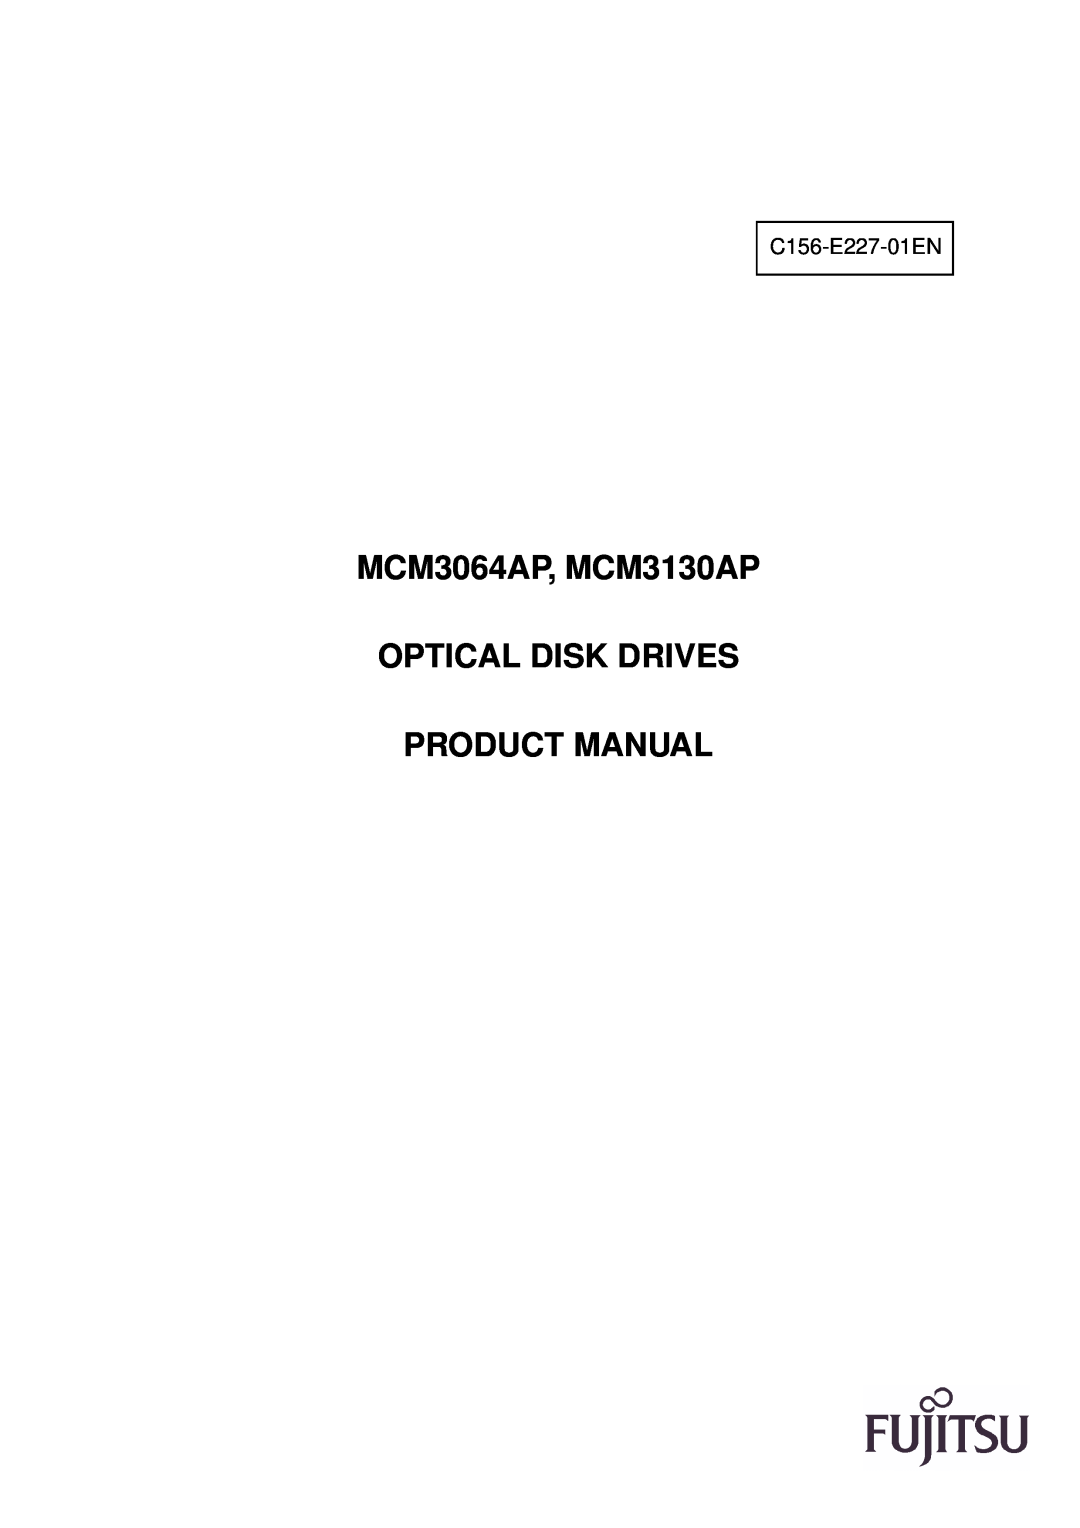 Fujitsu manual MCM3064AP, MCM3130AP OPTICAL DISK DRIVES PRODUCT MANUAL, C156-E227-01EN 